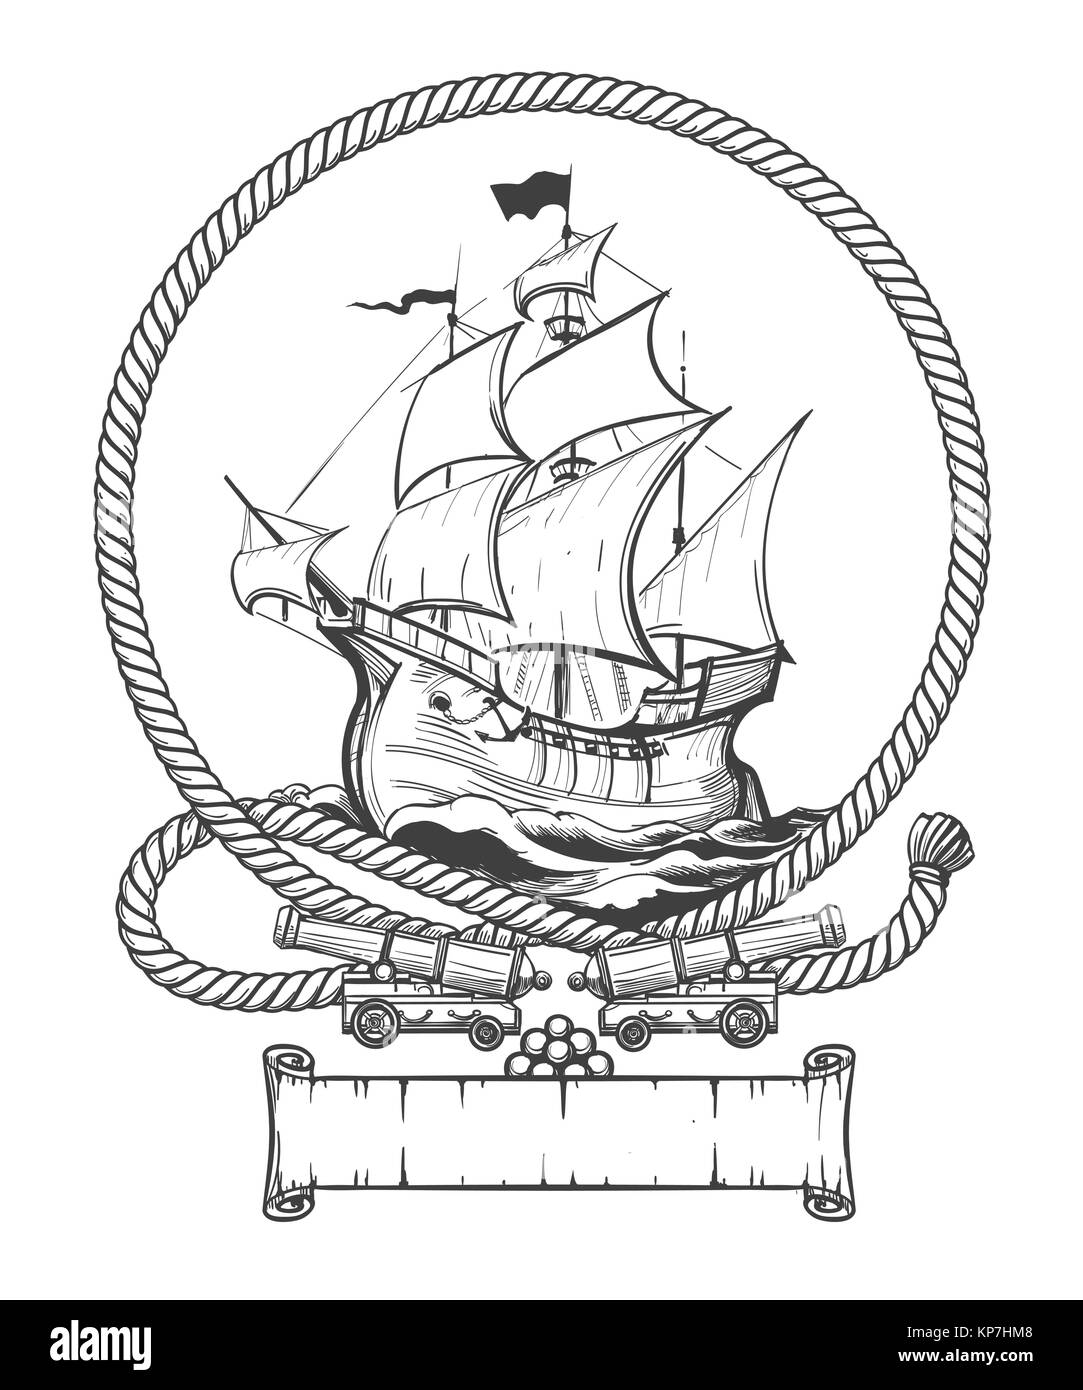 Nave a vela in corda telaio con cannoni di nave disegnata in stile di incisione. Illustrazione Vettoriale. Illustrazione Vettoriale